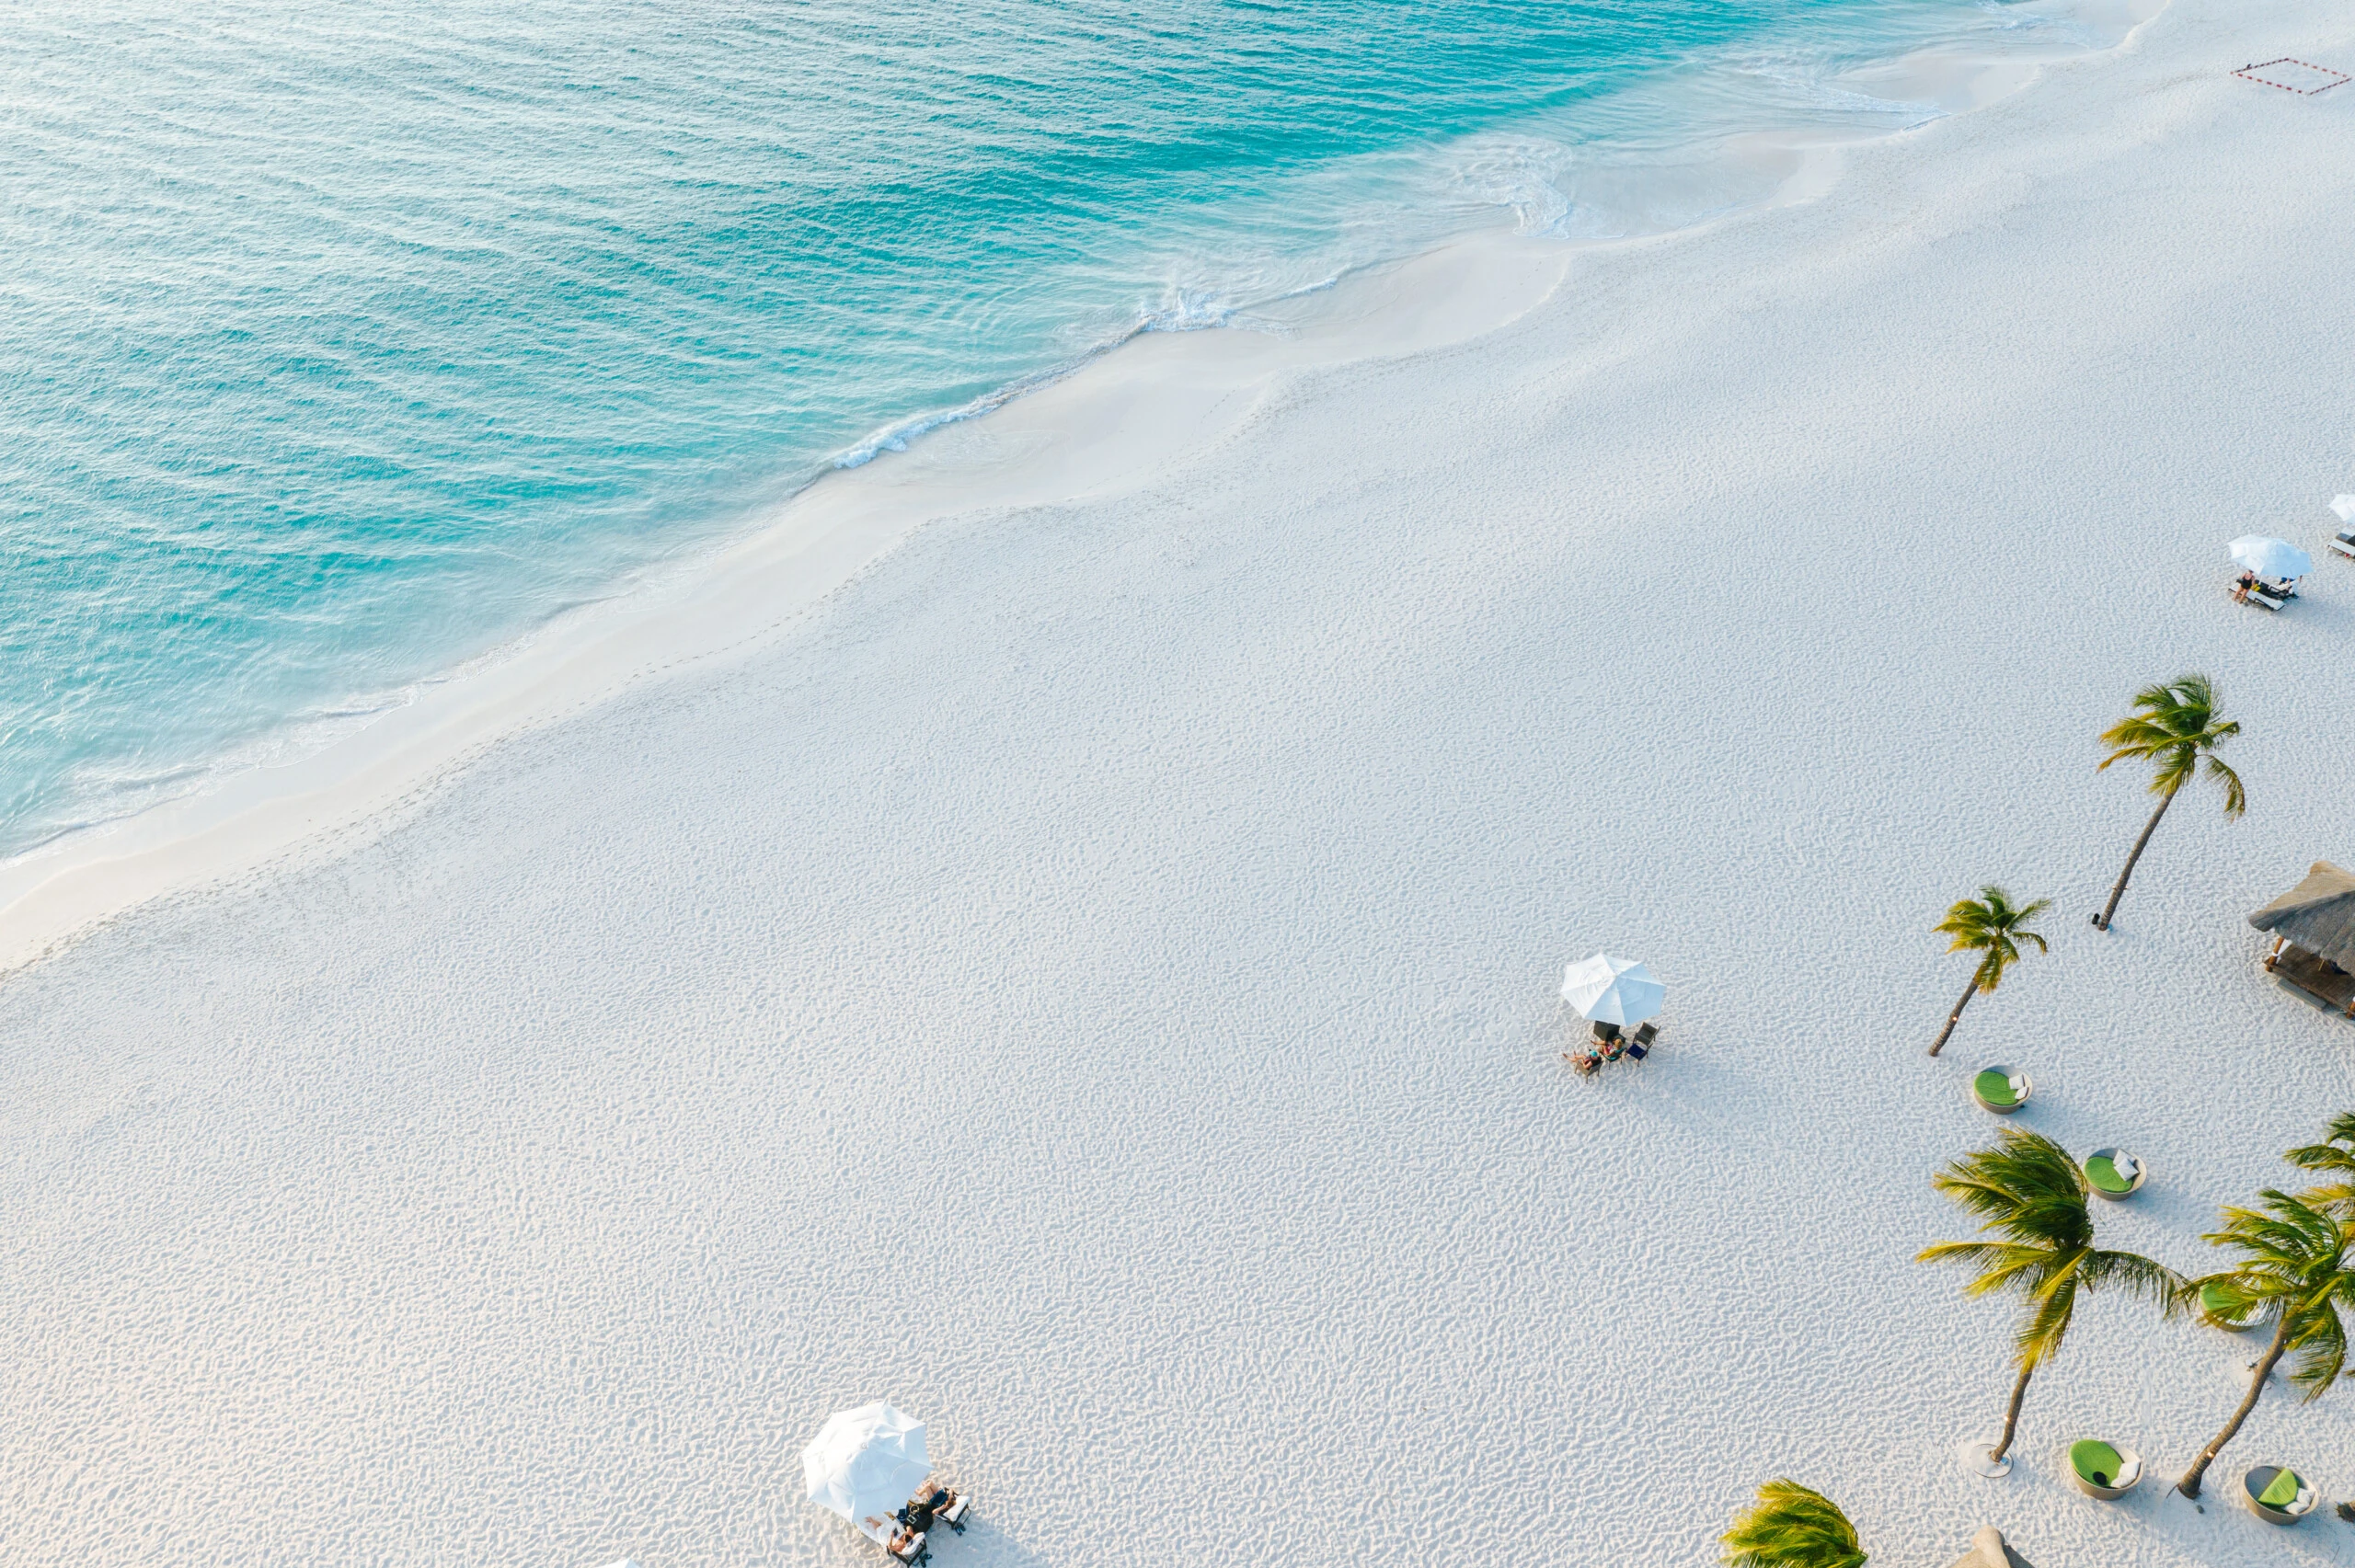 Eagle Beach. Son más de 3 kilómetros de arena blanca coralina que no se calienta con el sol. El agua es cristalina y la amplitud de la playa hace que nunca parezca llena. 

